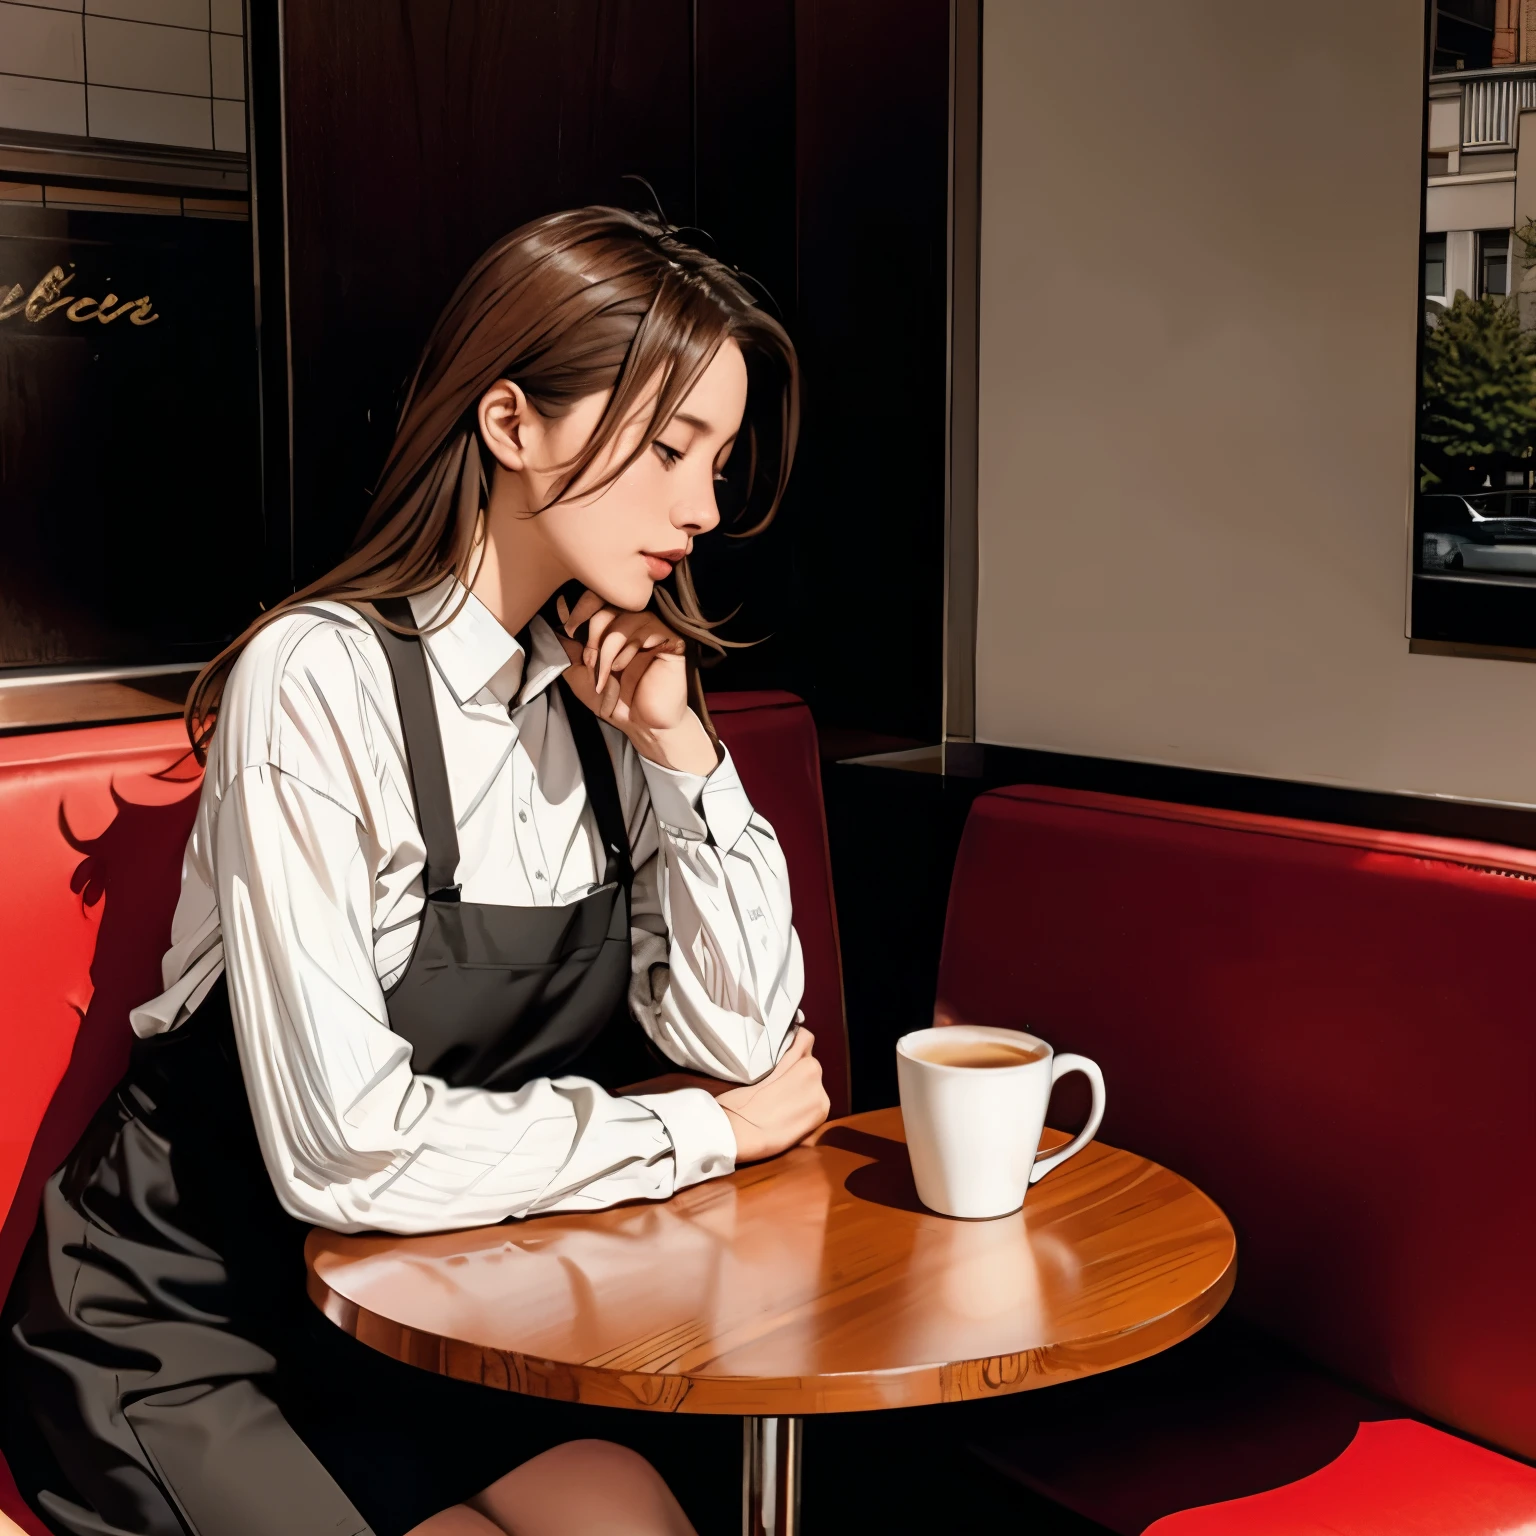 德國女人坐在咖啡桌旁喝咖啡、艾瑪&#39;照片。窗户阳光, 藍頭髮, 動態姿勢, 肌理, 皮膚蒼白, 有光澤的皮膚, (苗條的, 小的:1.2), [:(清晰的焦點集中在臉部, 詳細的臉部, 完美的眼睛, 查看檢視器:1.2):0.2], 實際的, 膠片顆粒, 最好的品質, 傑作